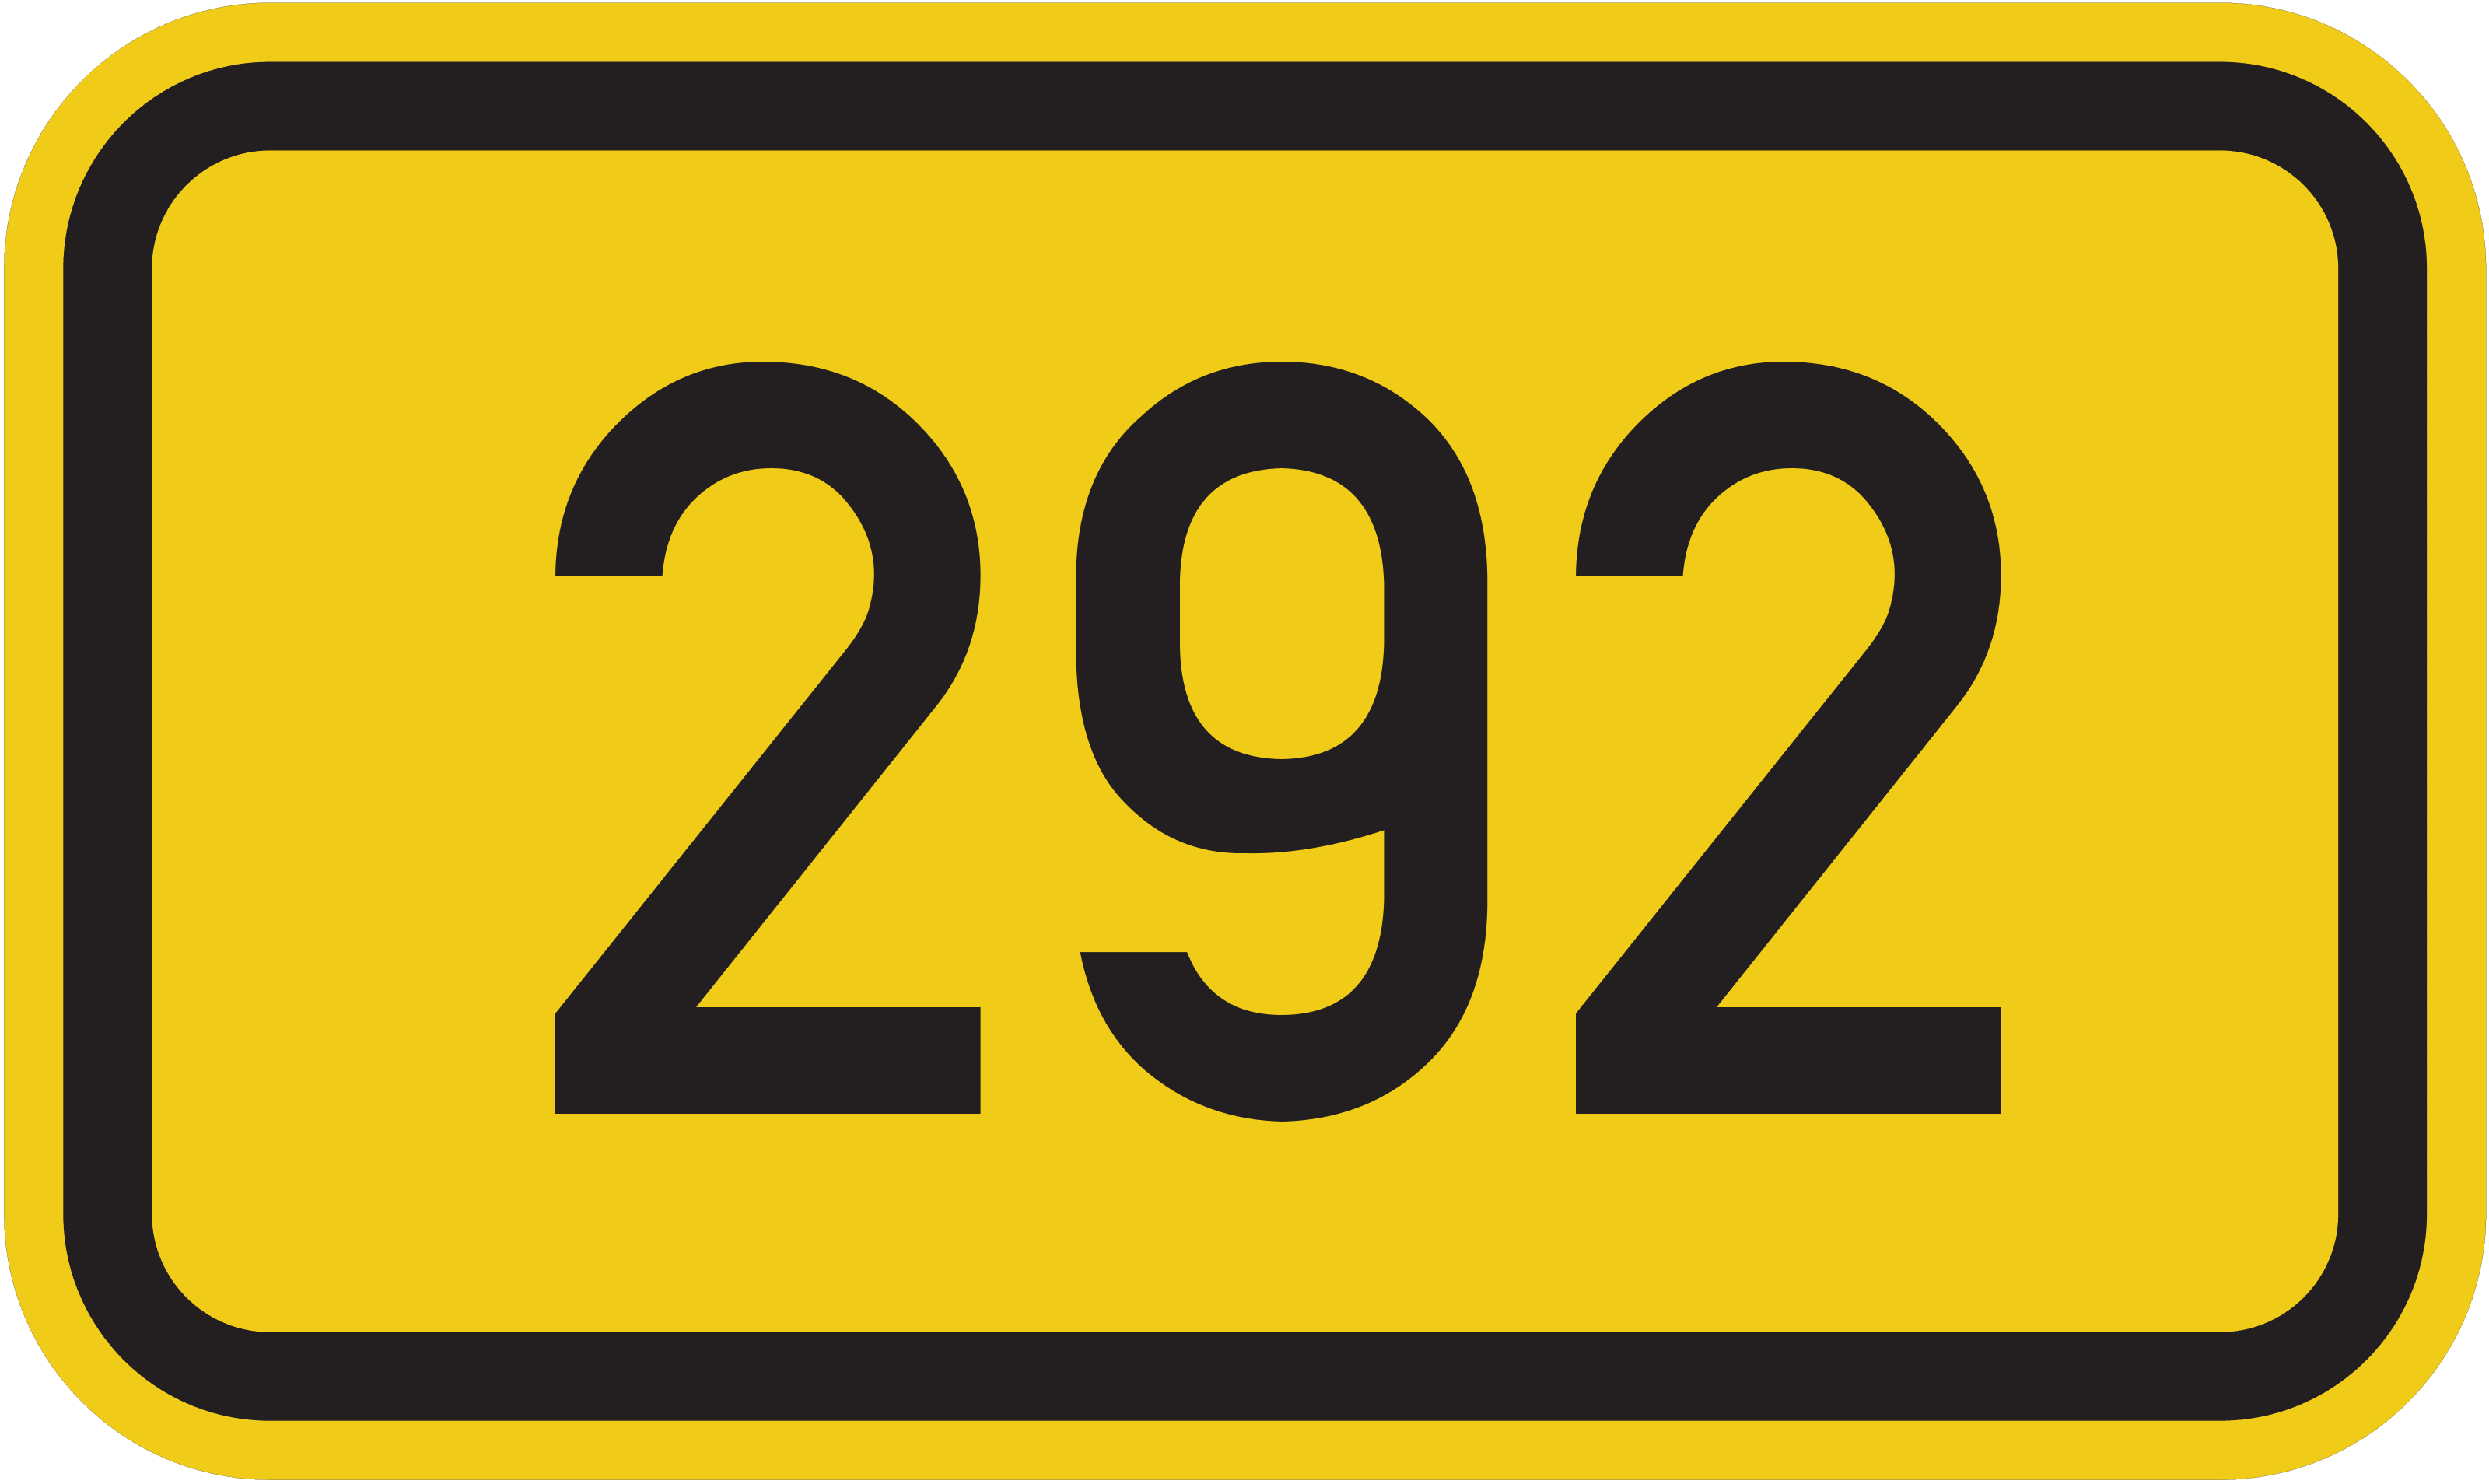 Bundesstraße B 292